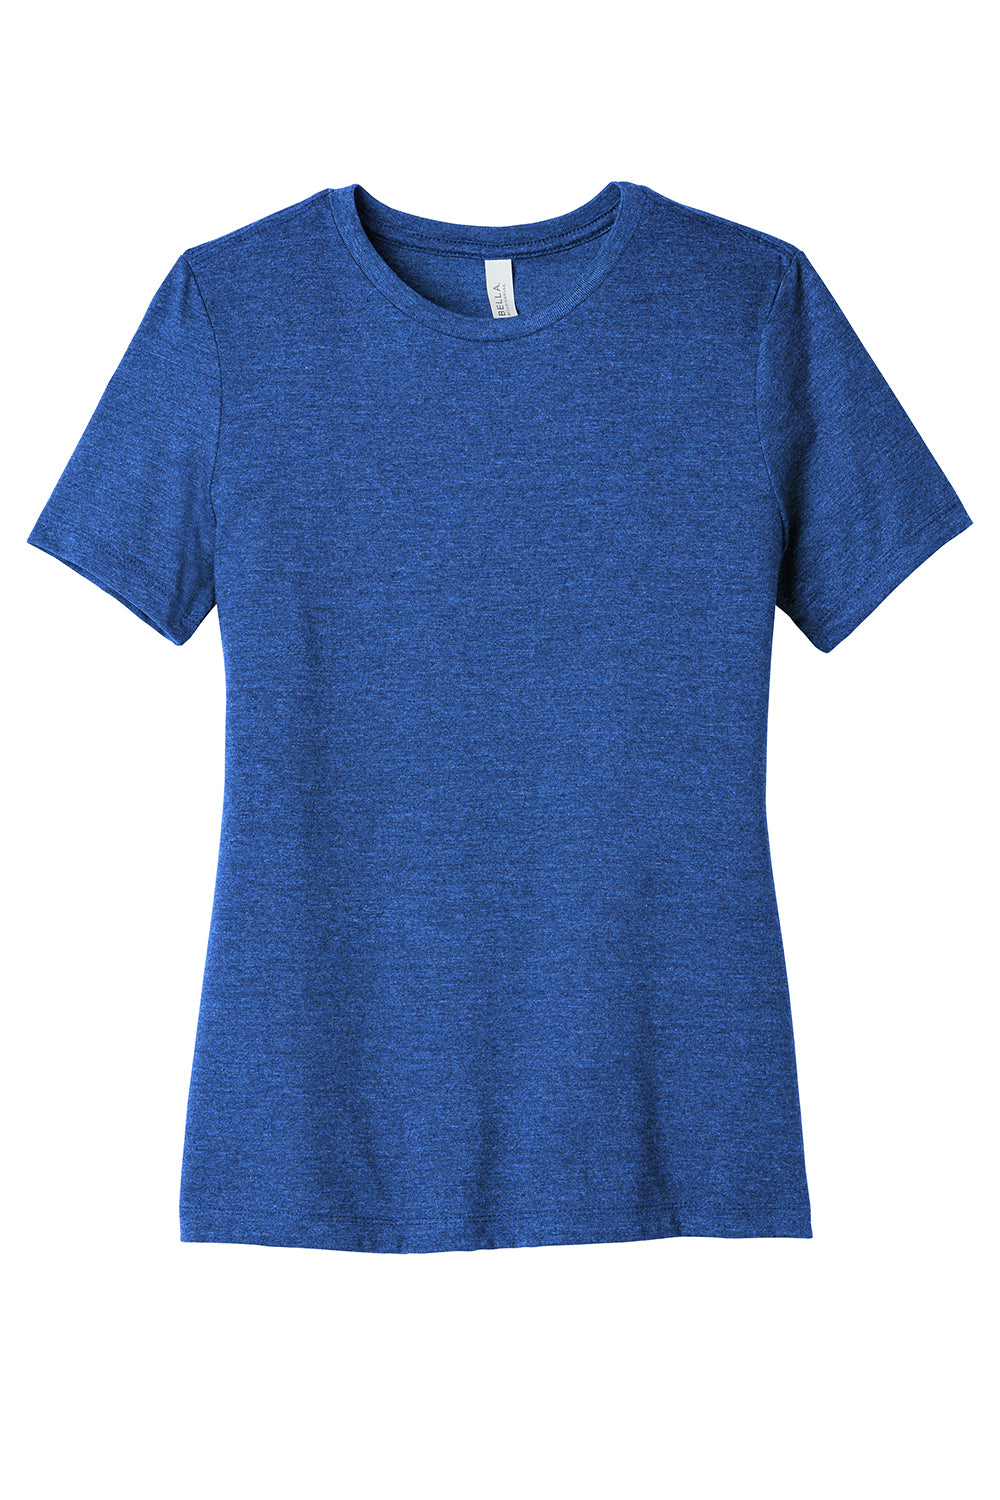 Bella + Canvas BC6400CVC/6400CVC Womens CVC Short Sleeve Crewneck T-Shirt Heather True Royal Blue Flat Front